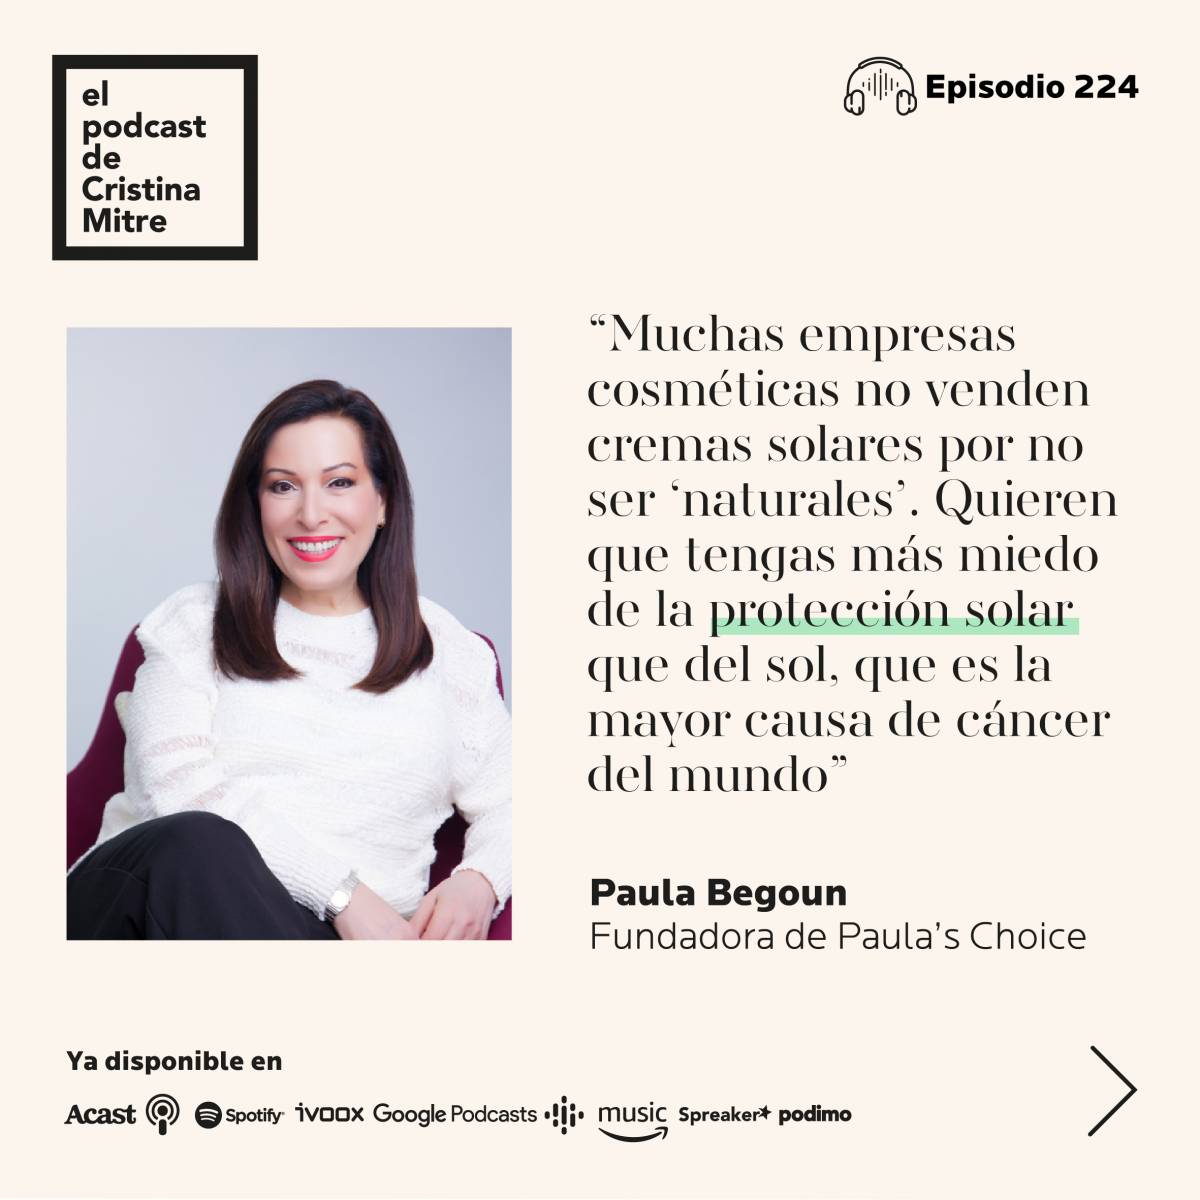 Podcast Cristina Mitre cosmetica